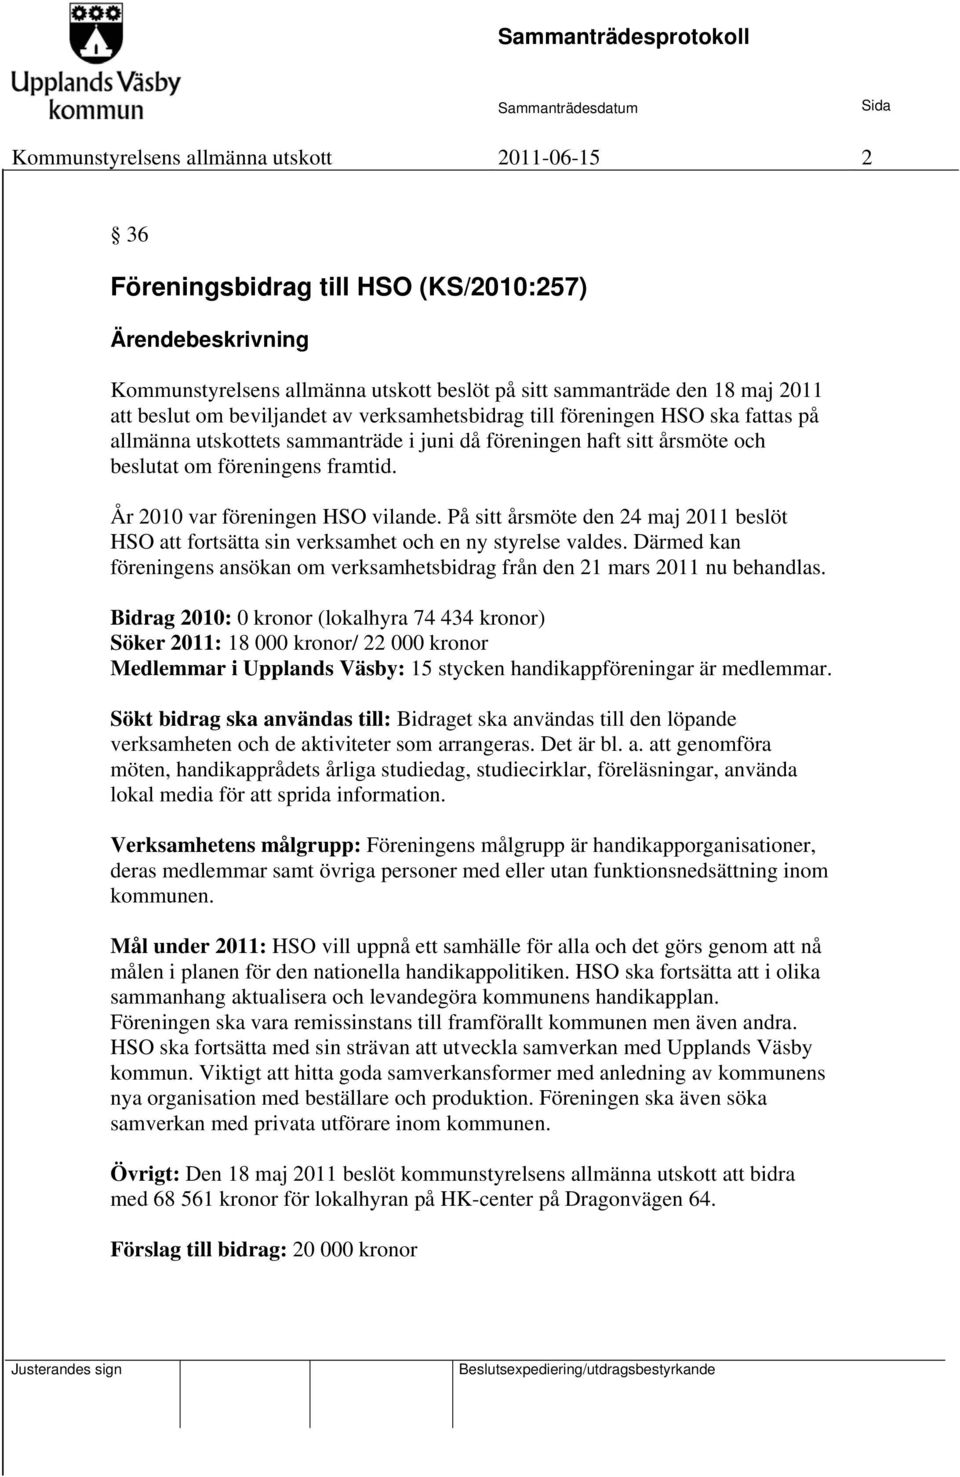 År 2010 var föreningen HSO vilande. På sitt årsmöte den 24 maj 2011 beslöt HSO att fortsätta sin verksamhet och en ny styrelse valdes.